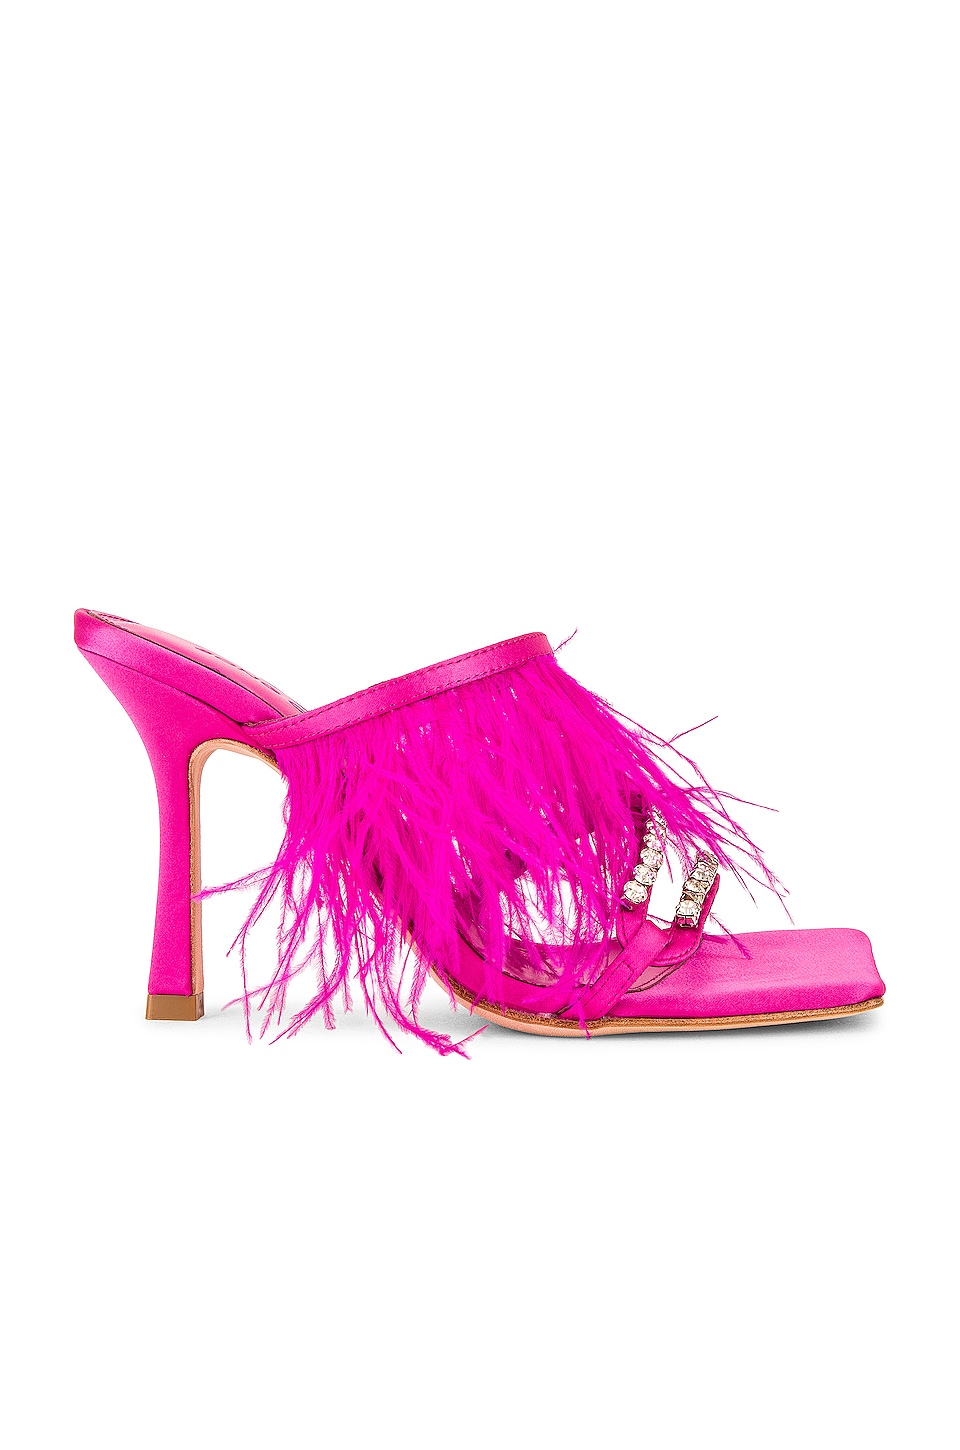 RAYE Prita Heel in Pink | REVOLVE